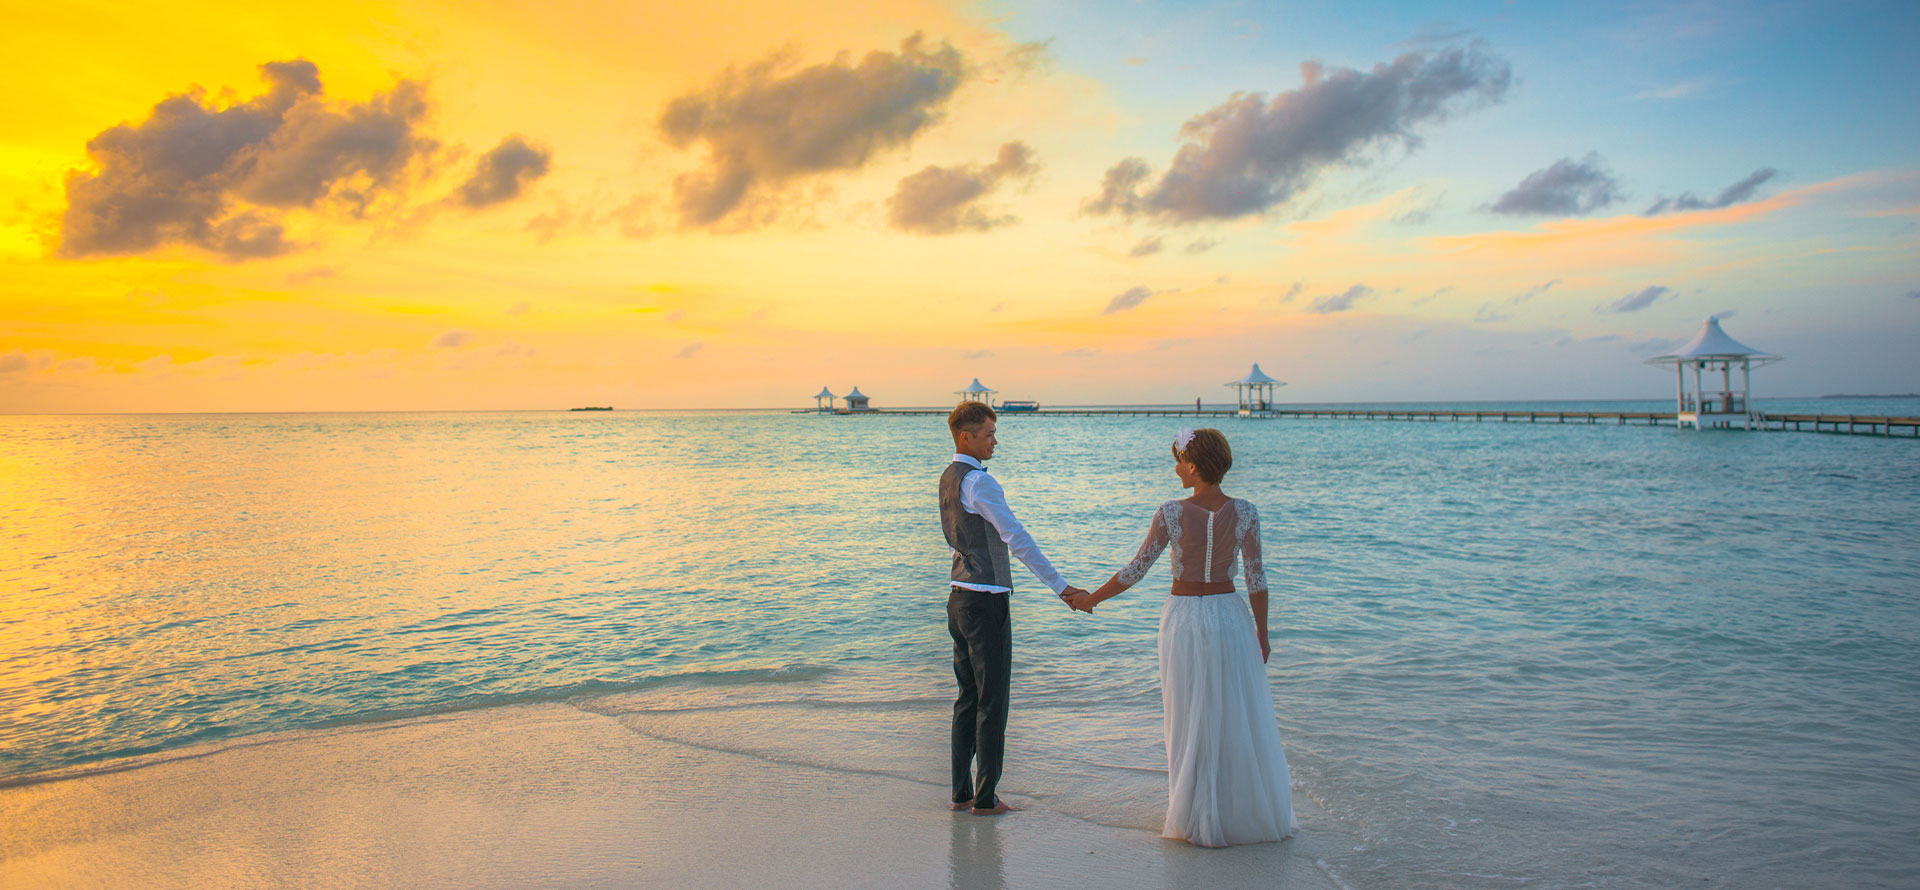 Lovers on the beach Bora Bora honeymoon.